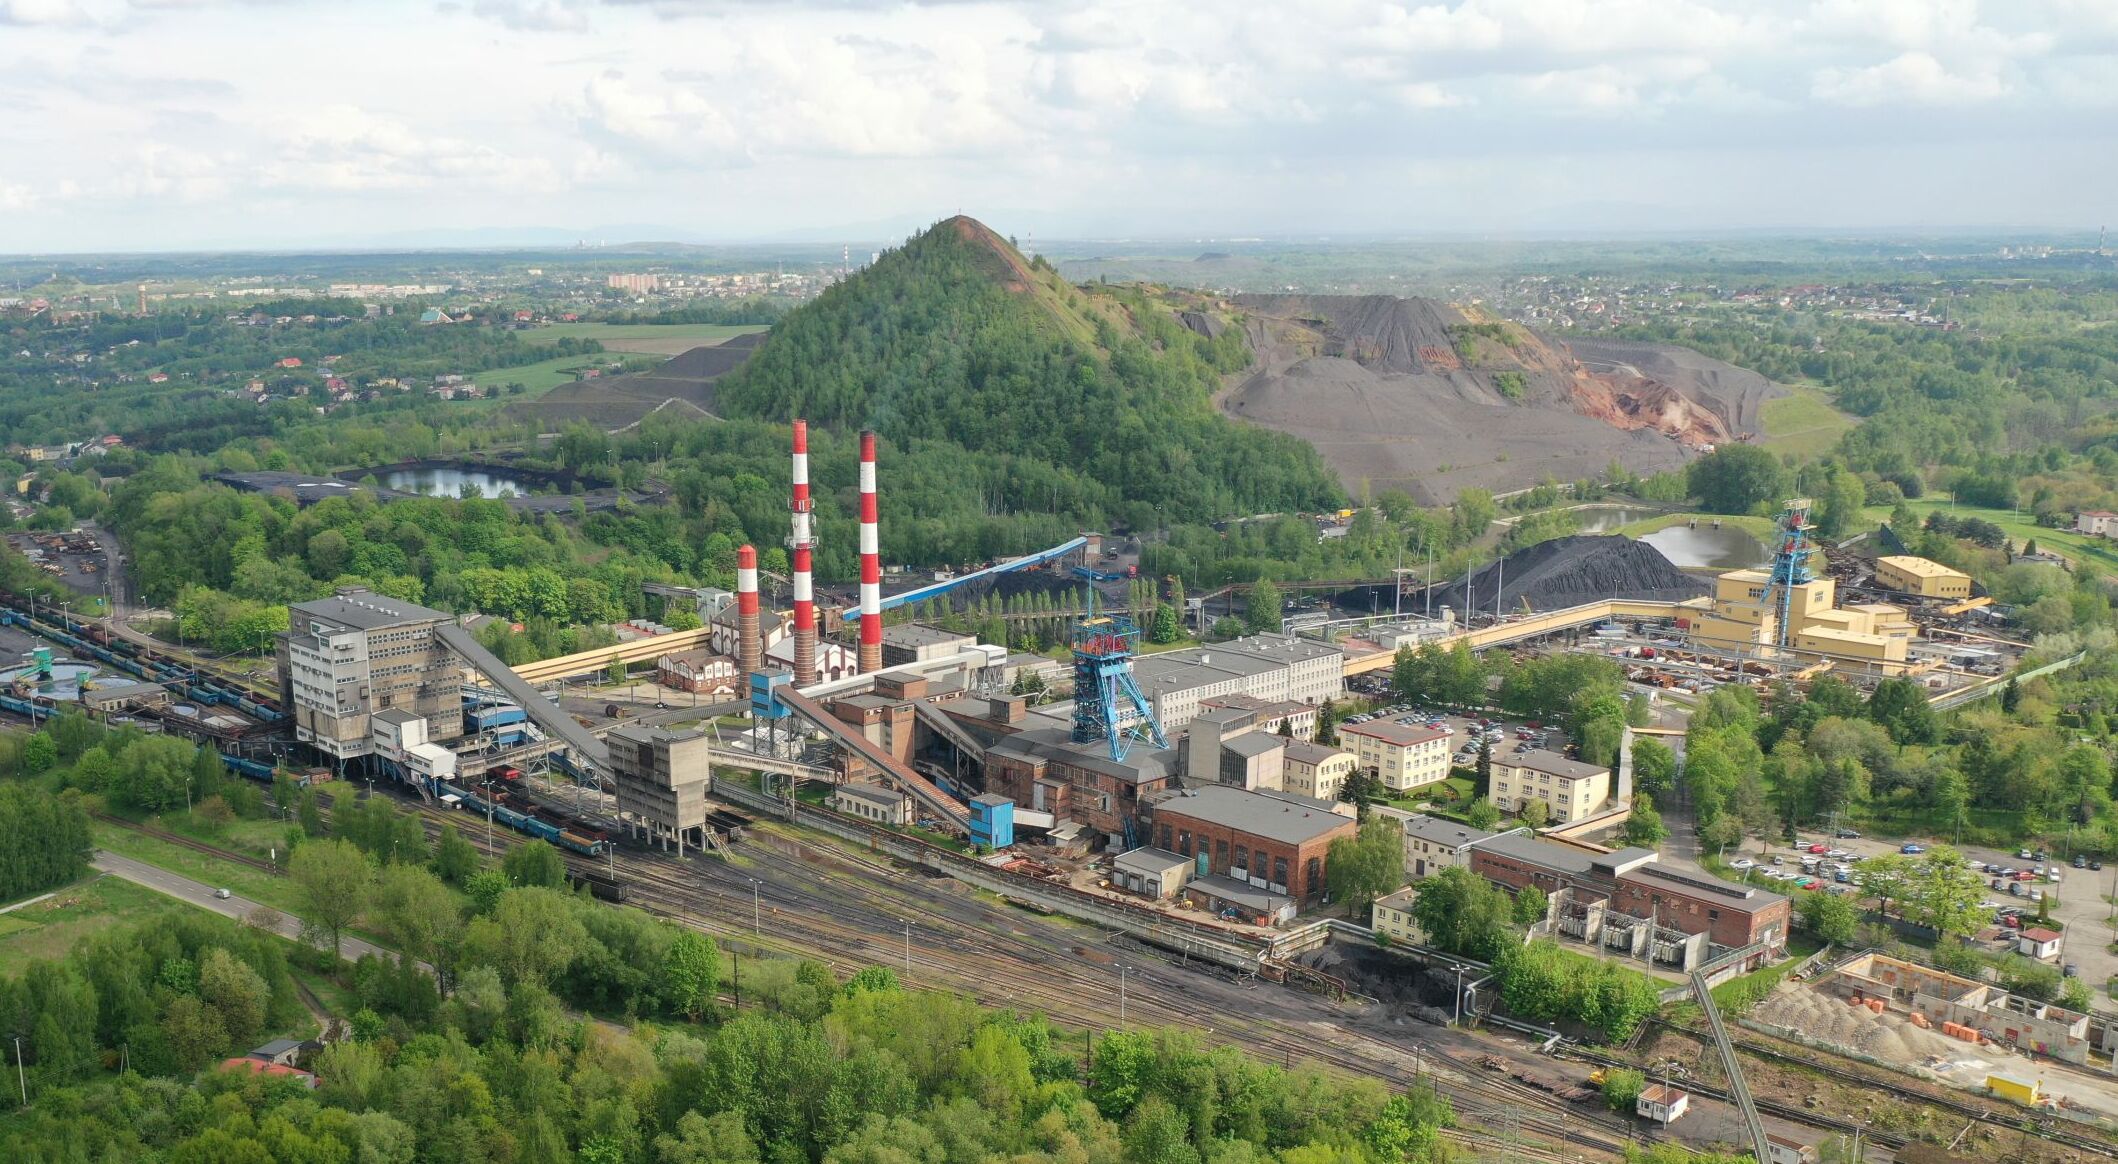 Rydułtowy Coal Mine